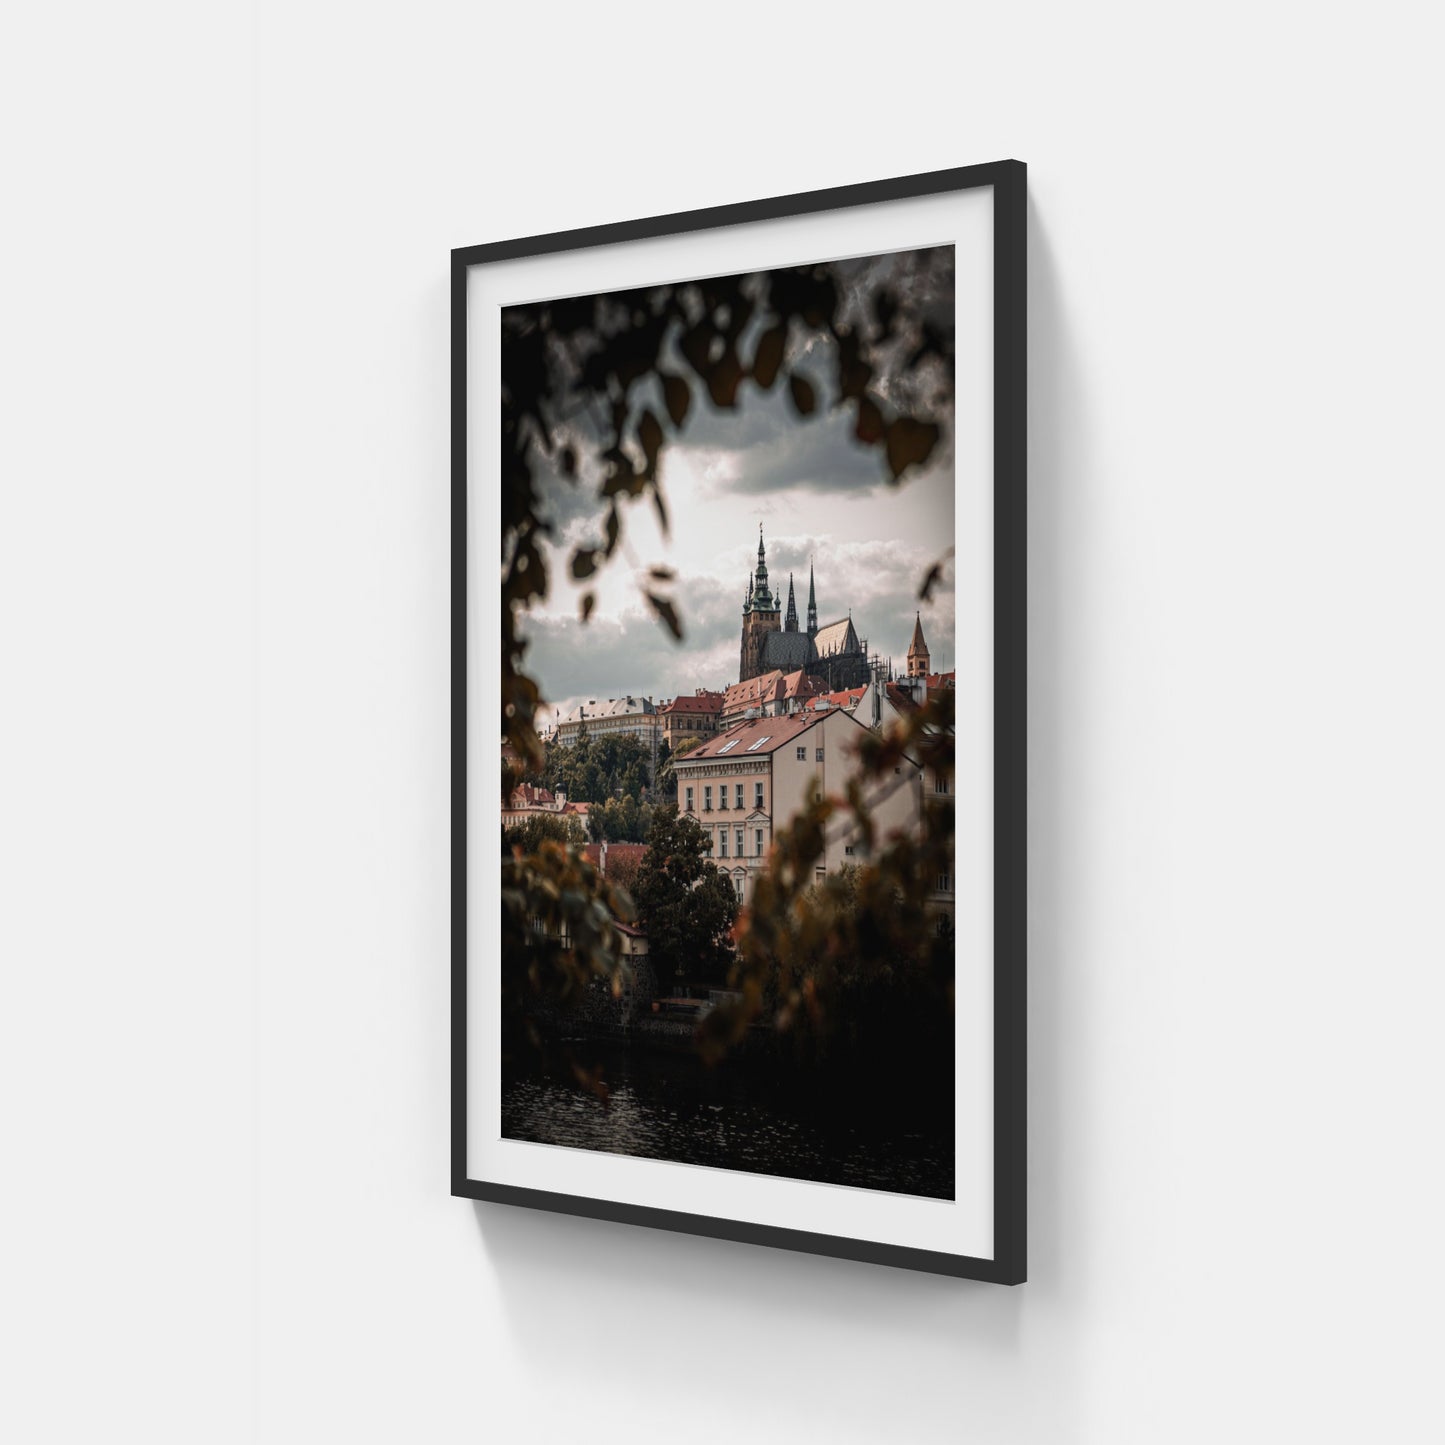 Through The Trees – Prague Castle, Czech Republic, 2020